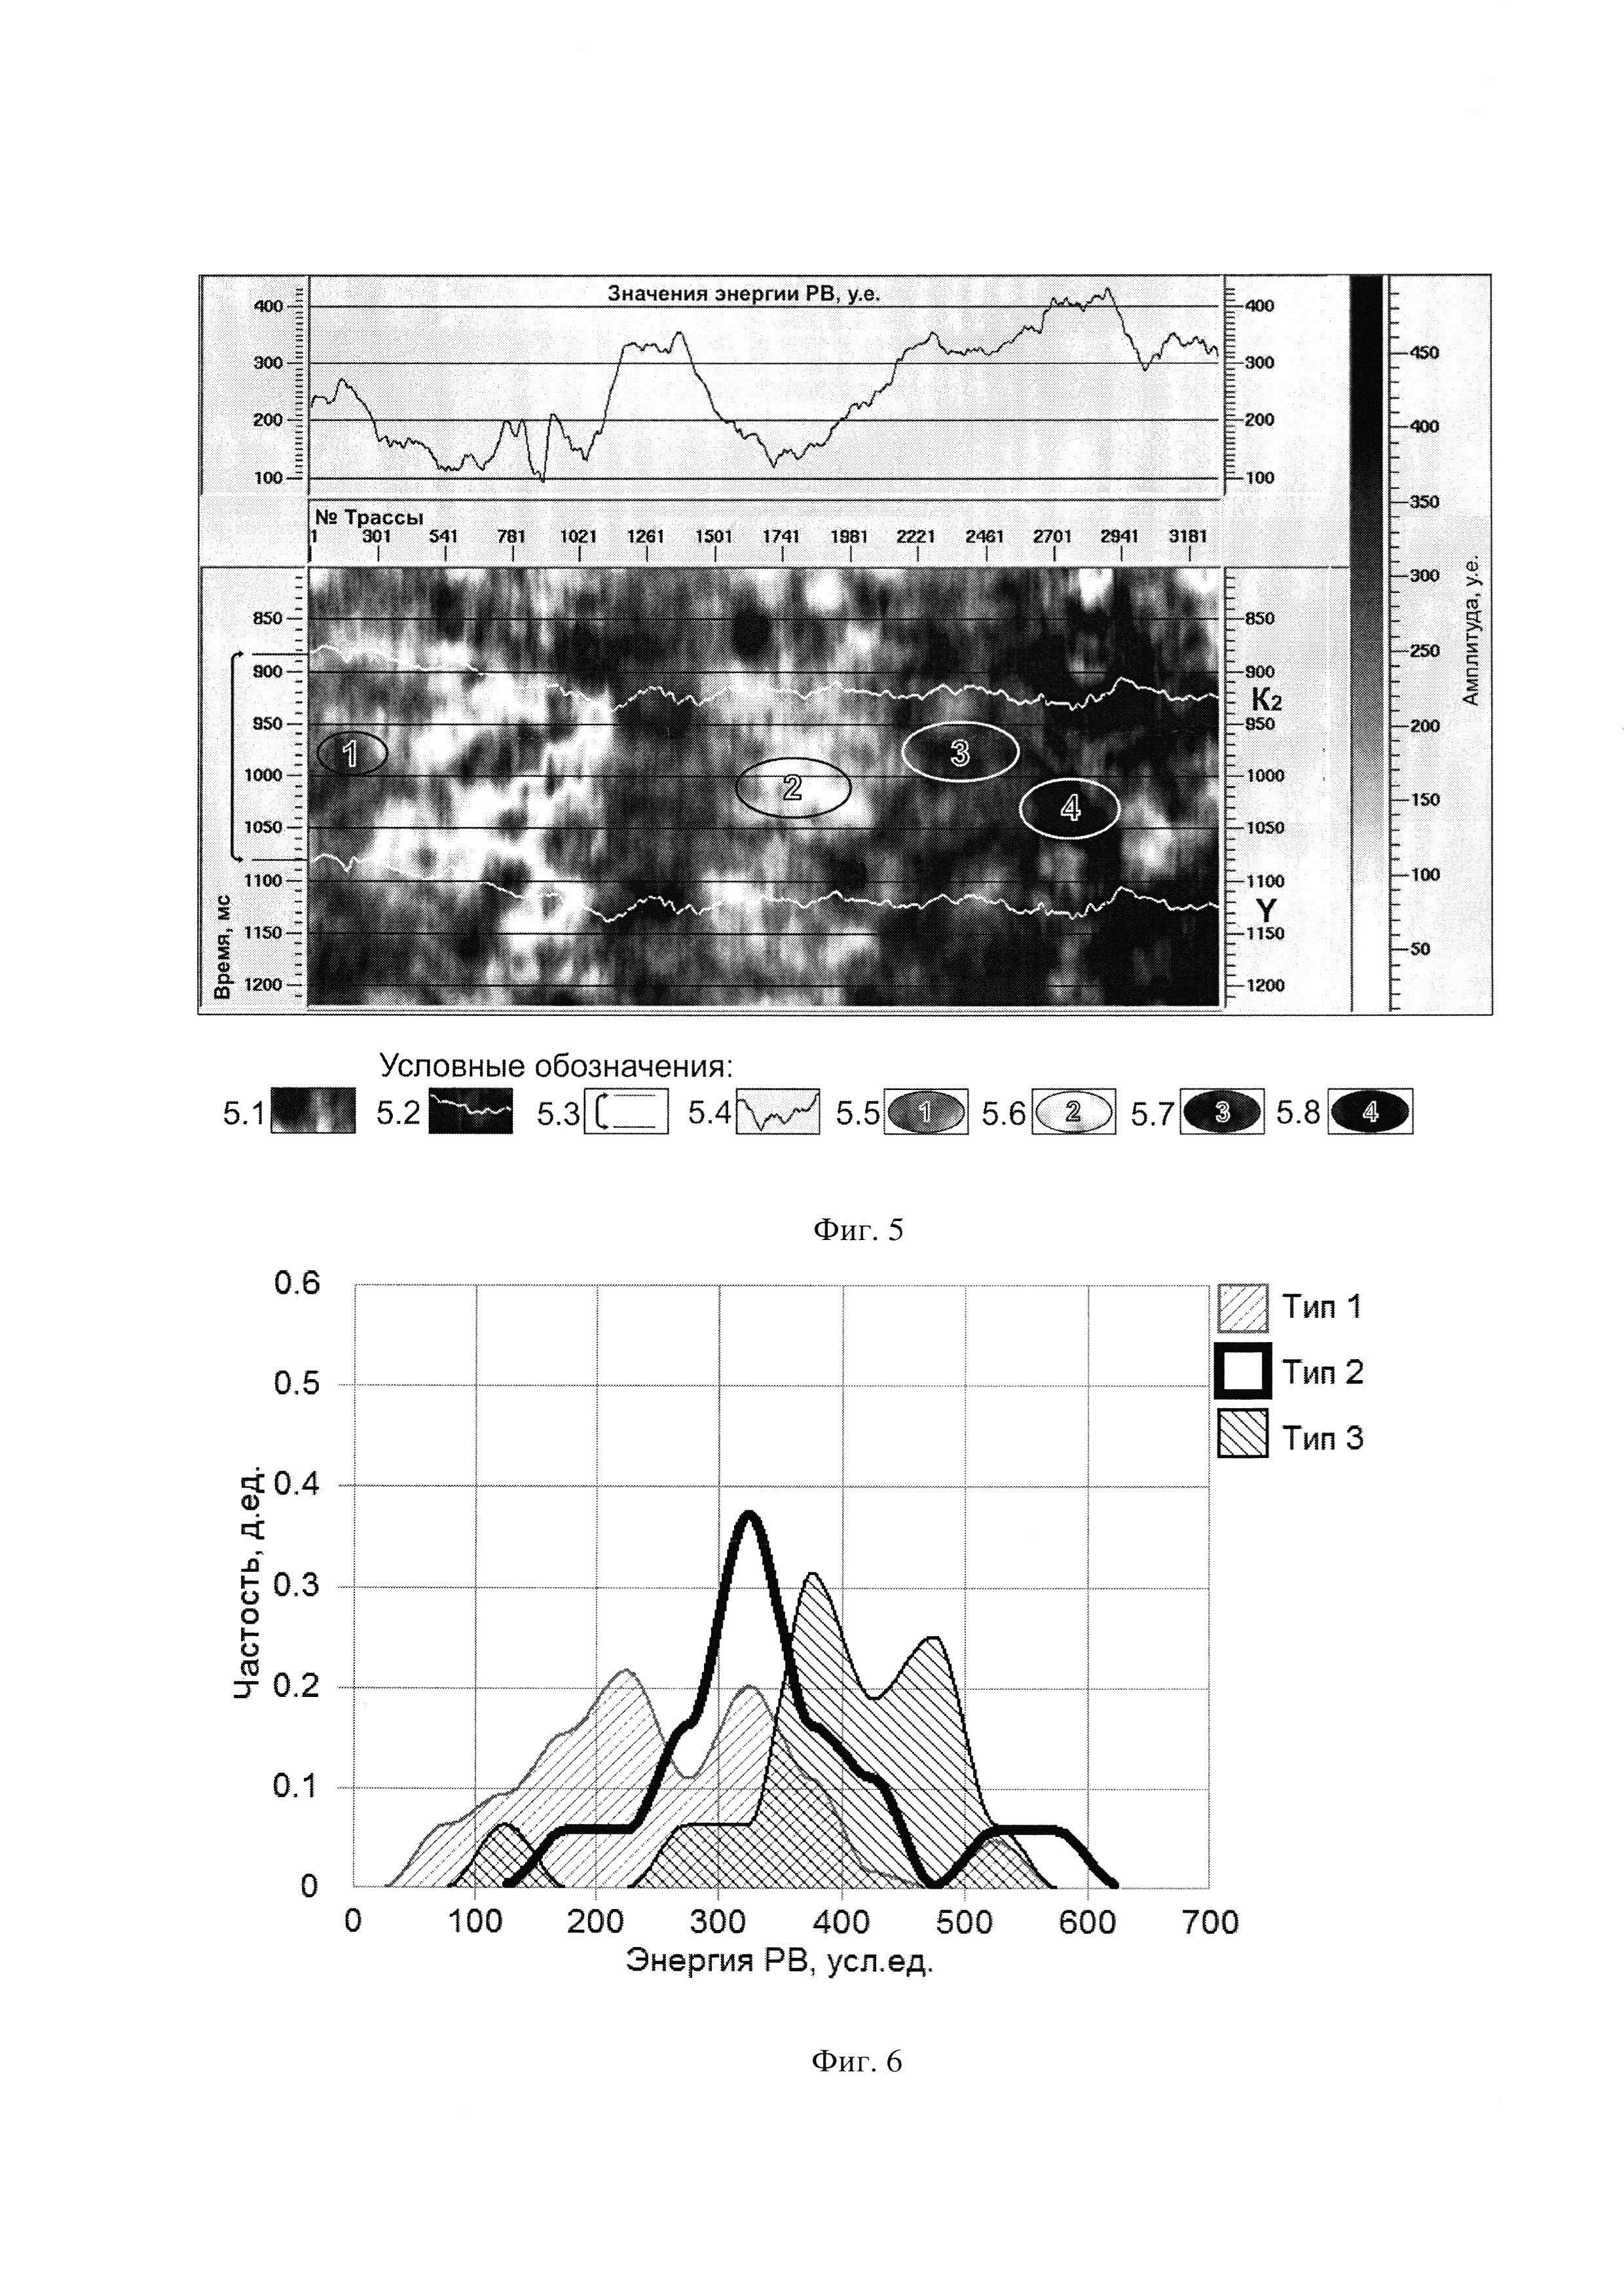 Способ выявления и картирования флюидонасыщенных анизотропных каверново-трещинных коллекторов в межсолевых карбонатных пластах осадочного чехла